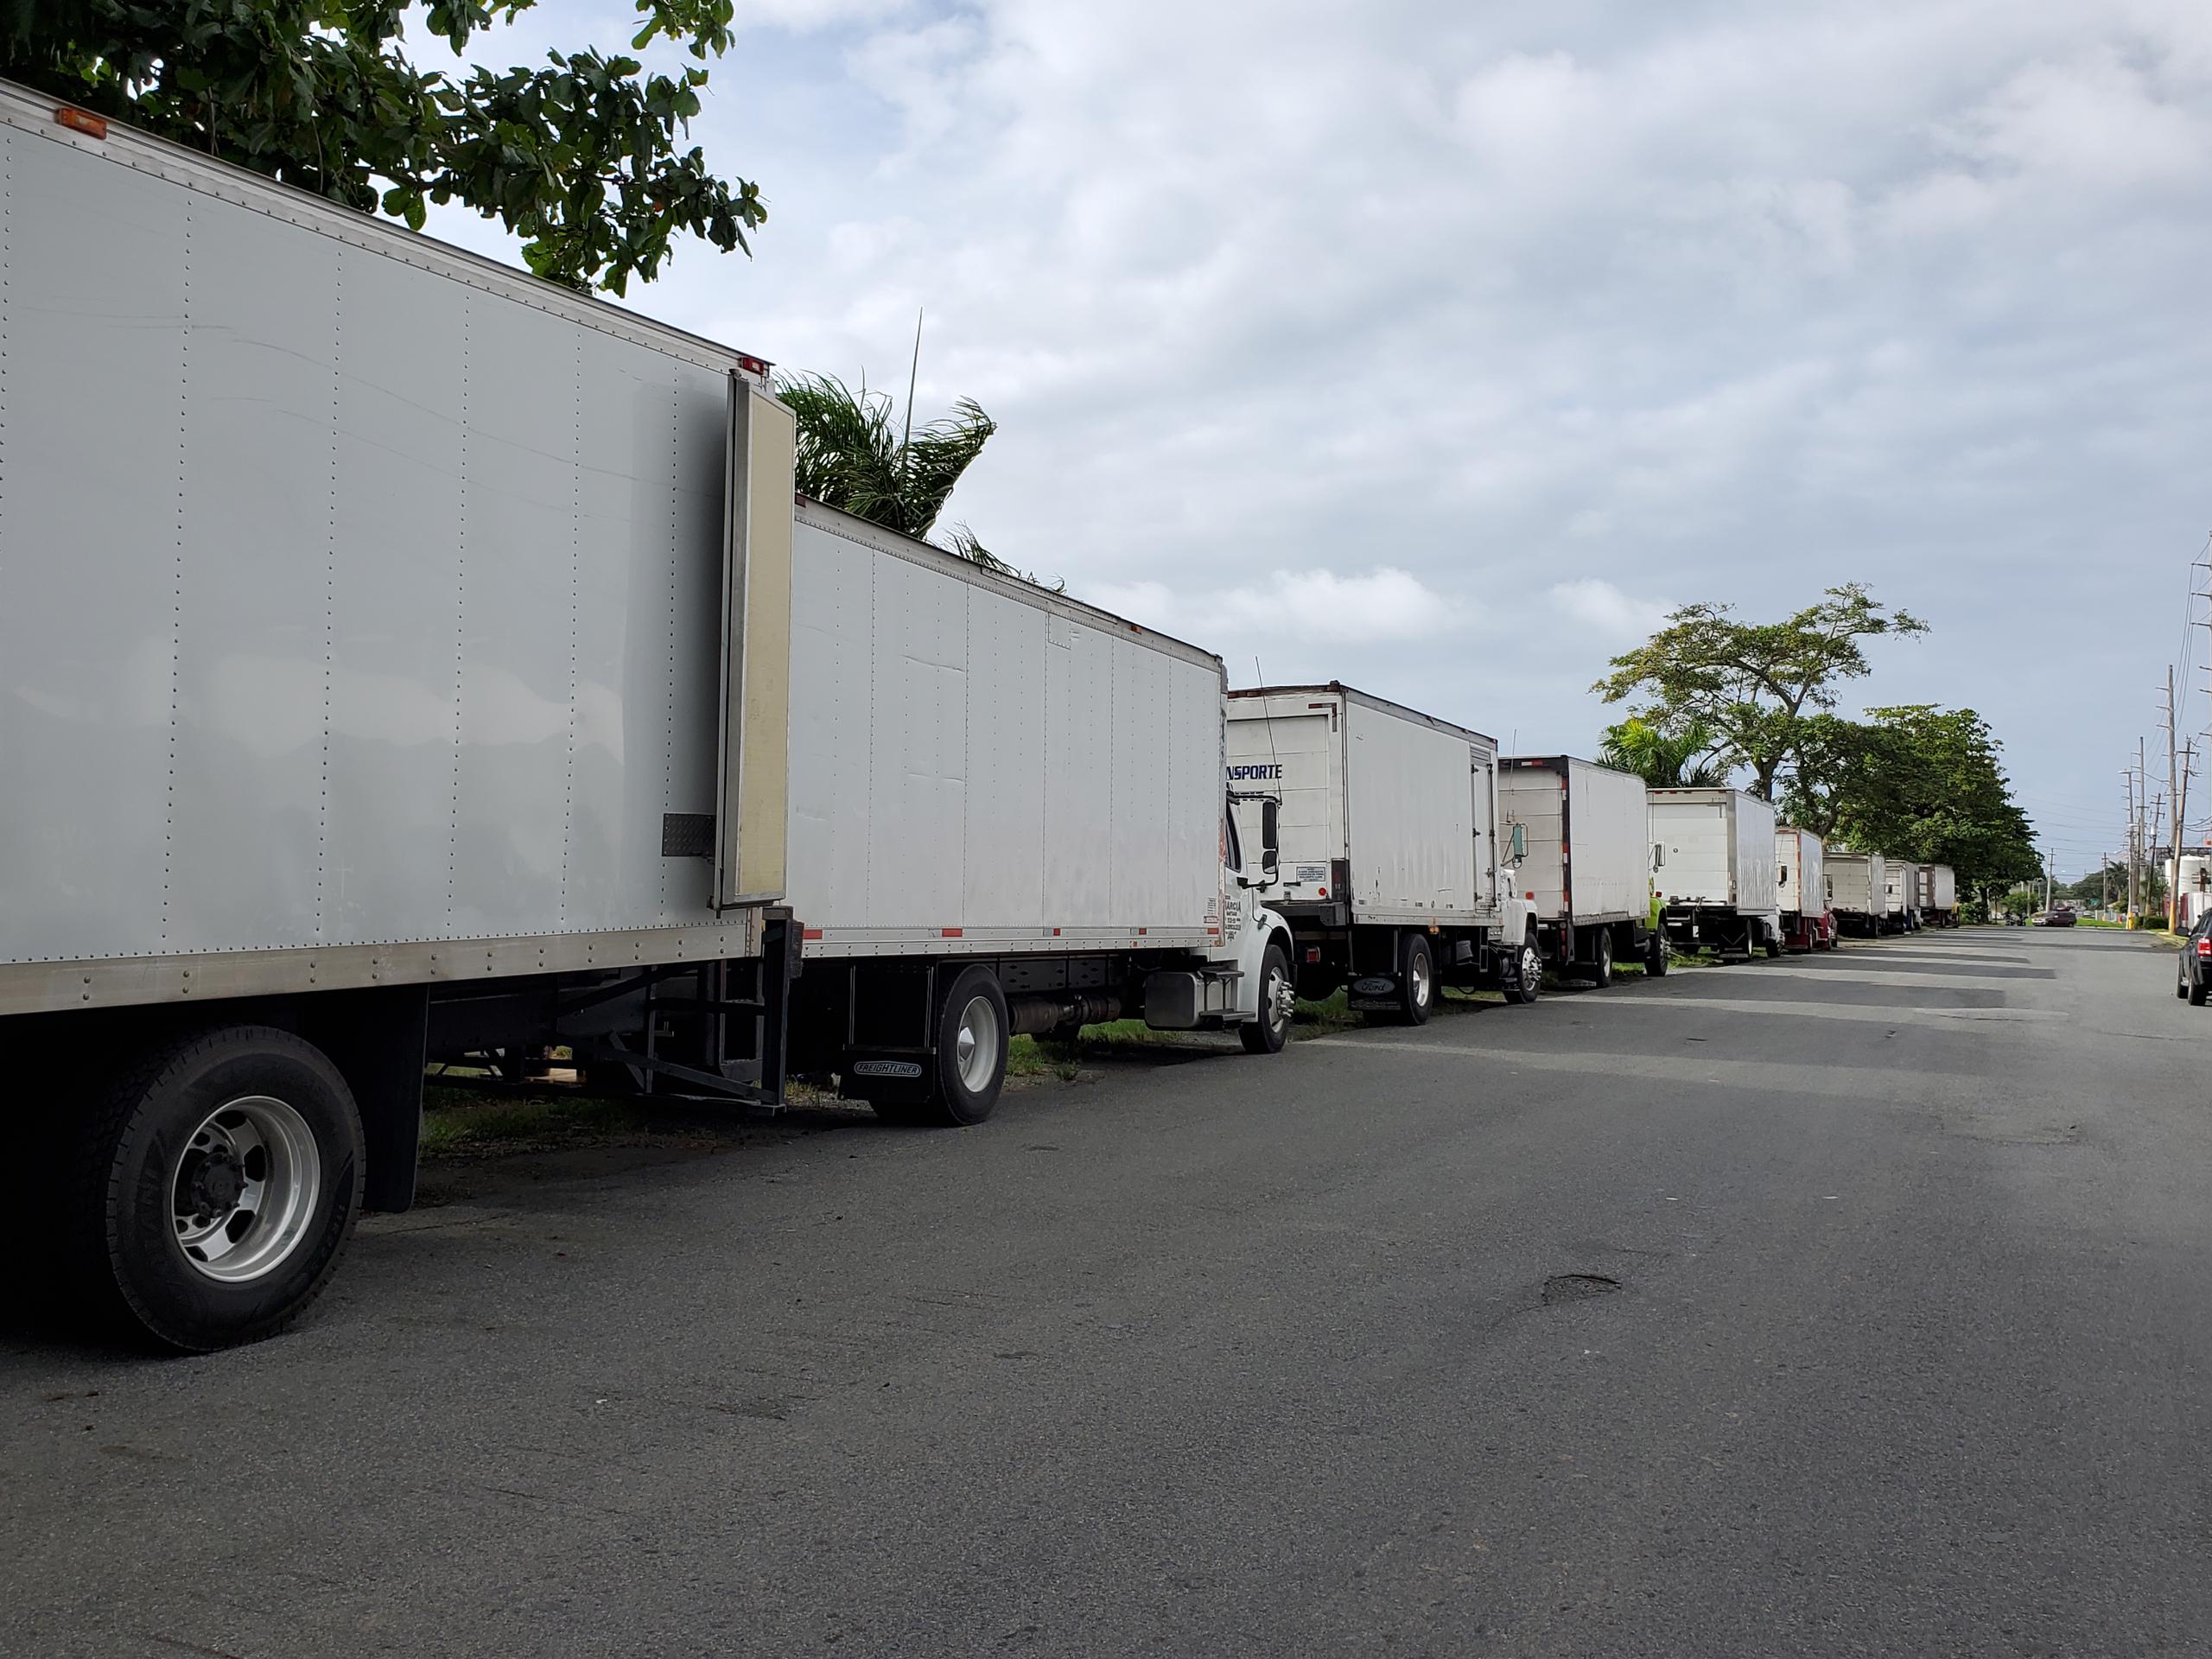 Camiones de la organización Camioneros Unidos, se mantienen parados en la marginal de la autopista PR-5, al tiempo que sus conductores reclaman paguen las tarifas establecidas por ley.